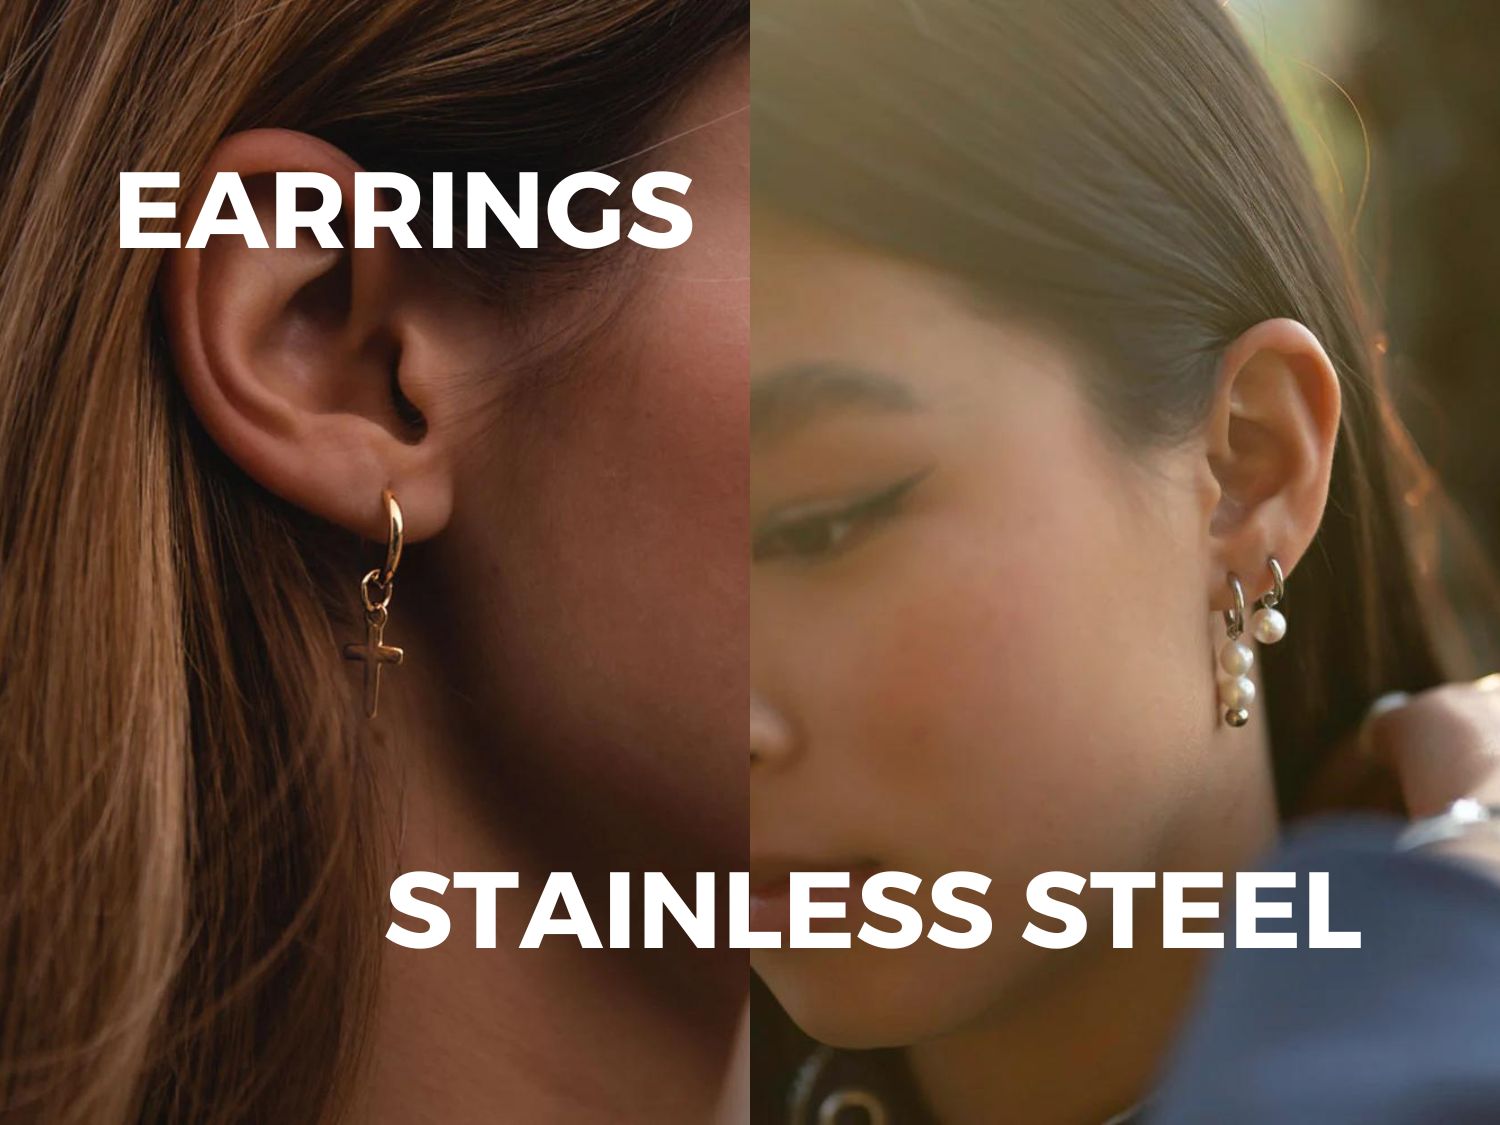 WHY CHOOSE STAINLESS STEEL EARRINGS?